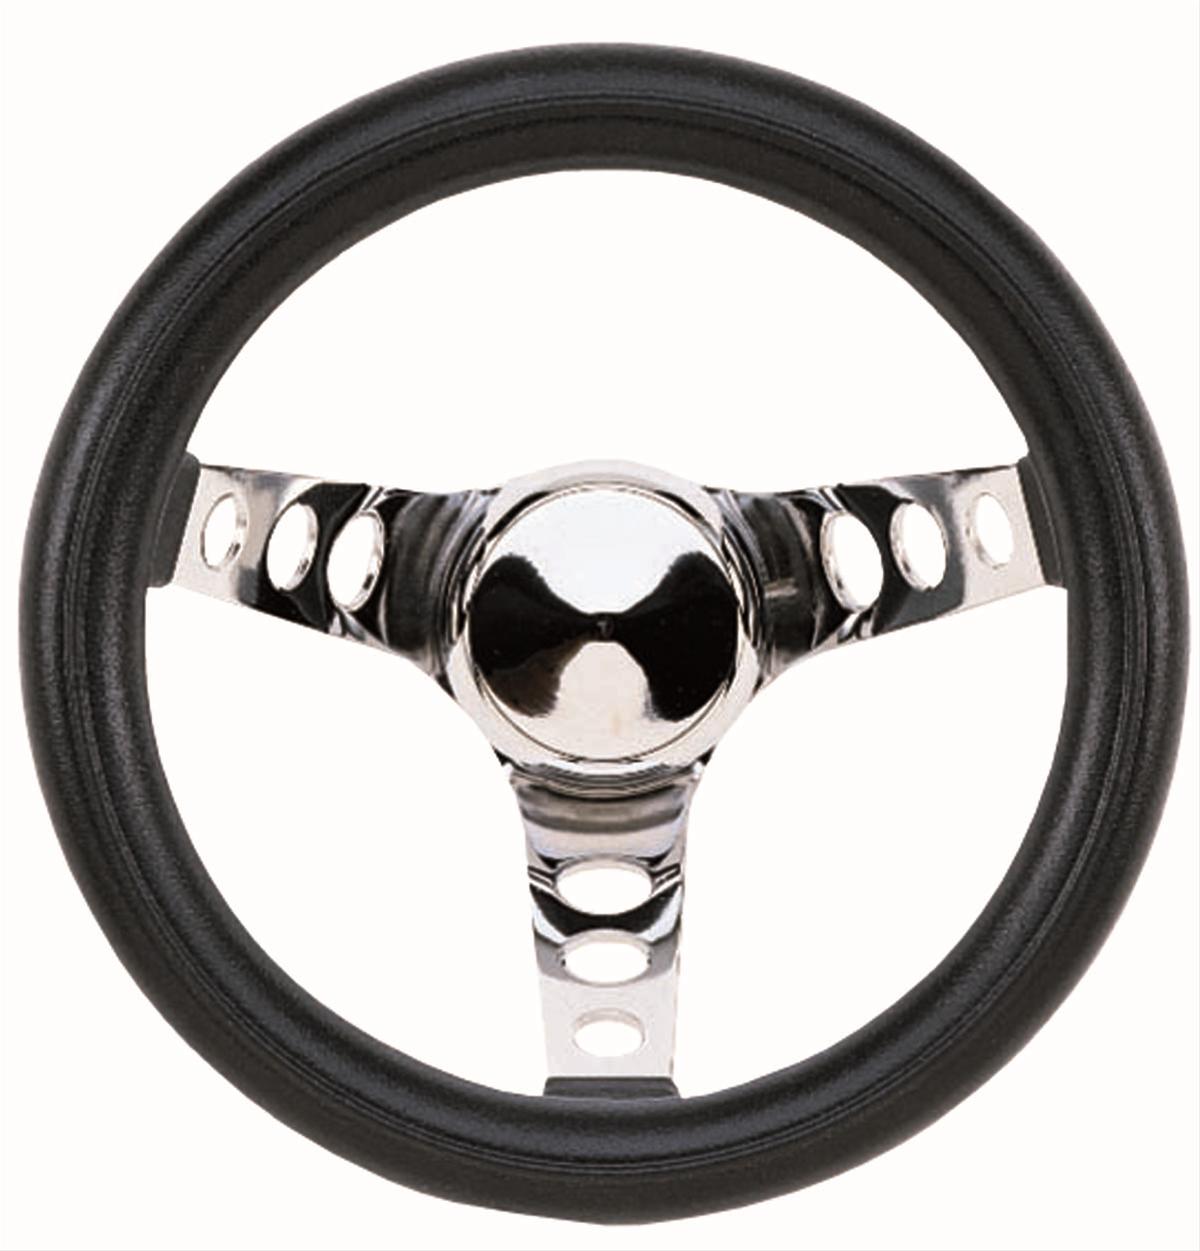 Chrome 3-Spoke Design Grant 838 Classic Series Steering Wheel 13 1/2" D